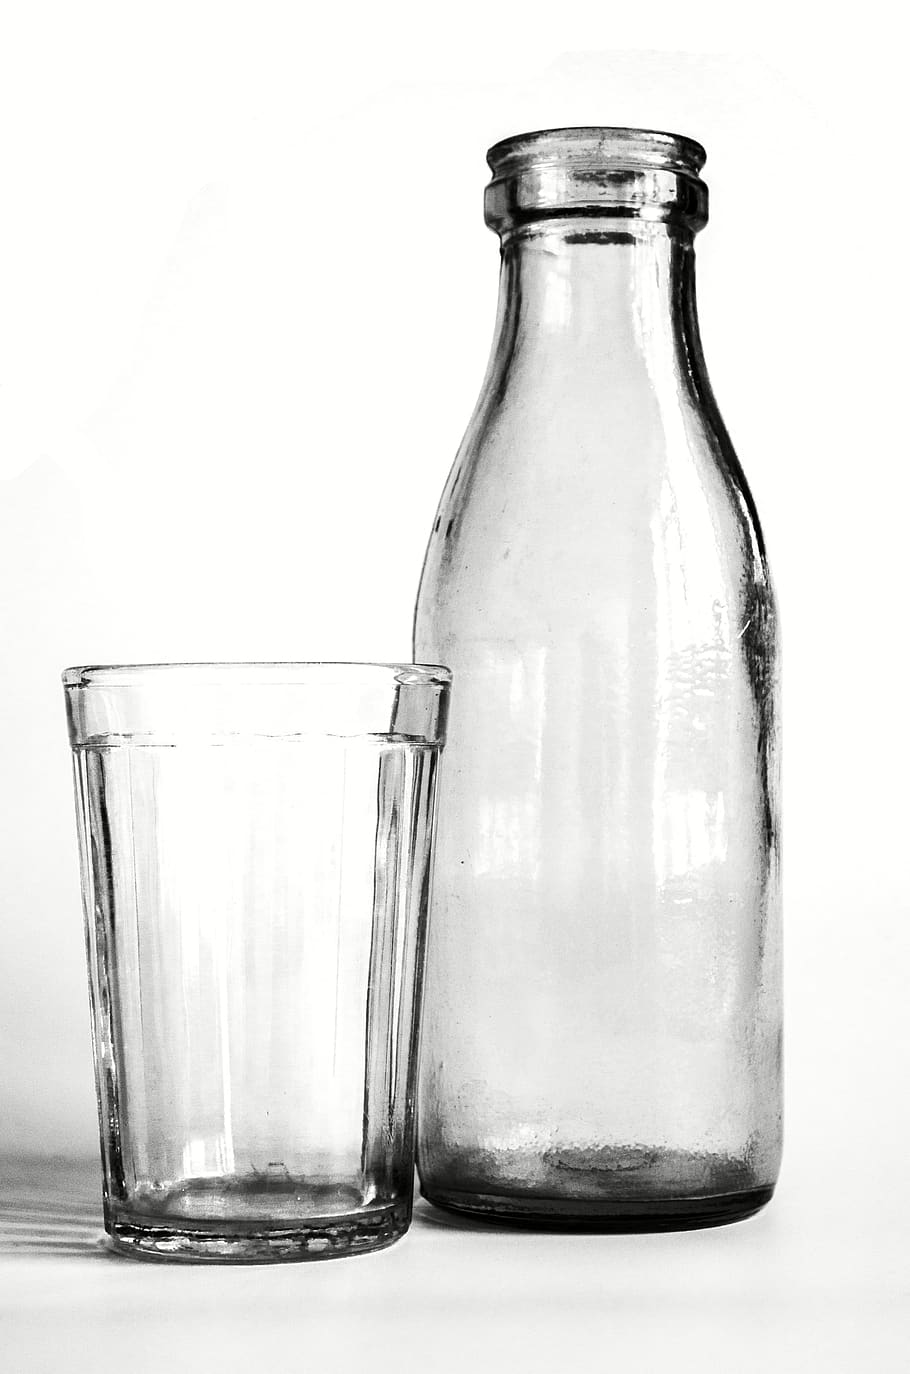 vidrio, botella, blanco y negro, bodegón, yogurt, antiguo, soviético, retro, botellas, botella de vidrio